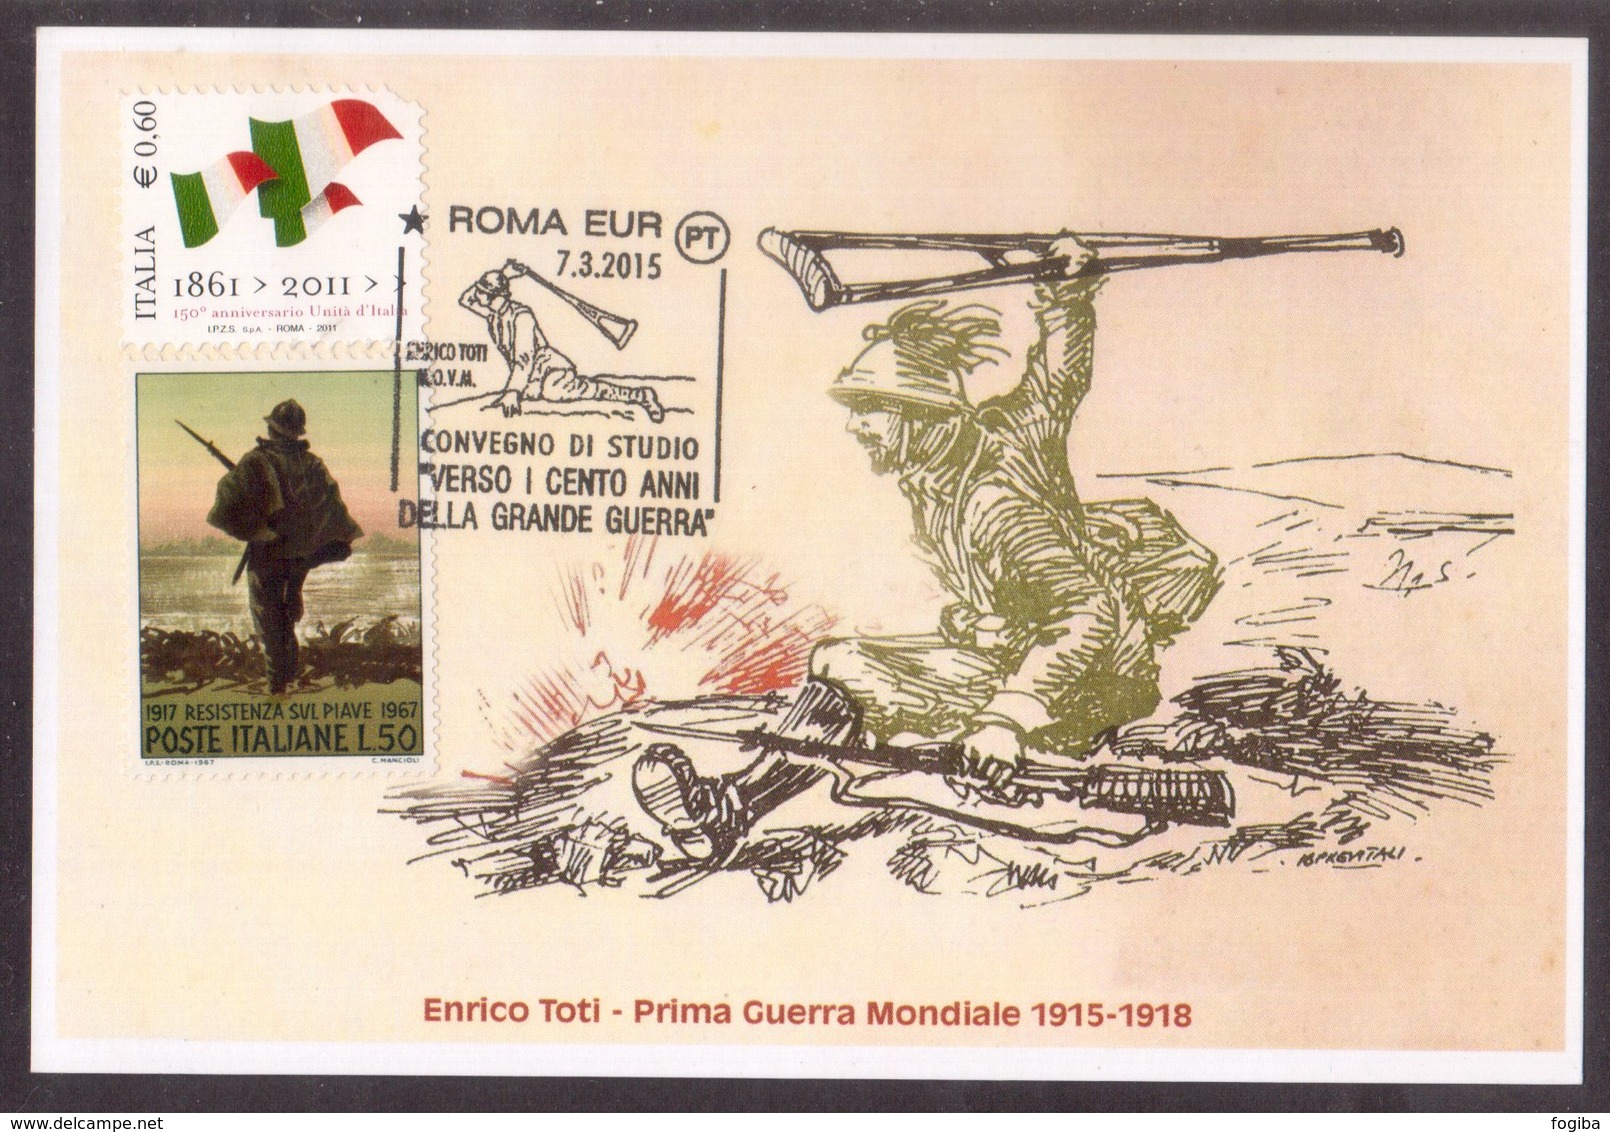 ZN11   Italia 2015 Prima Guerra Mondiale Enrico Toti Annullo Roma Eur Cartolina Postale - Prima Guerra Mondiale